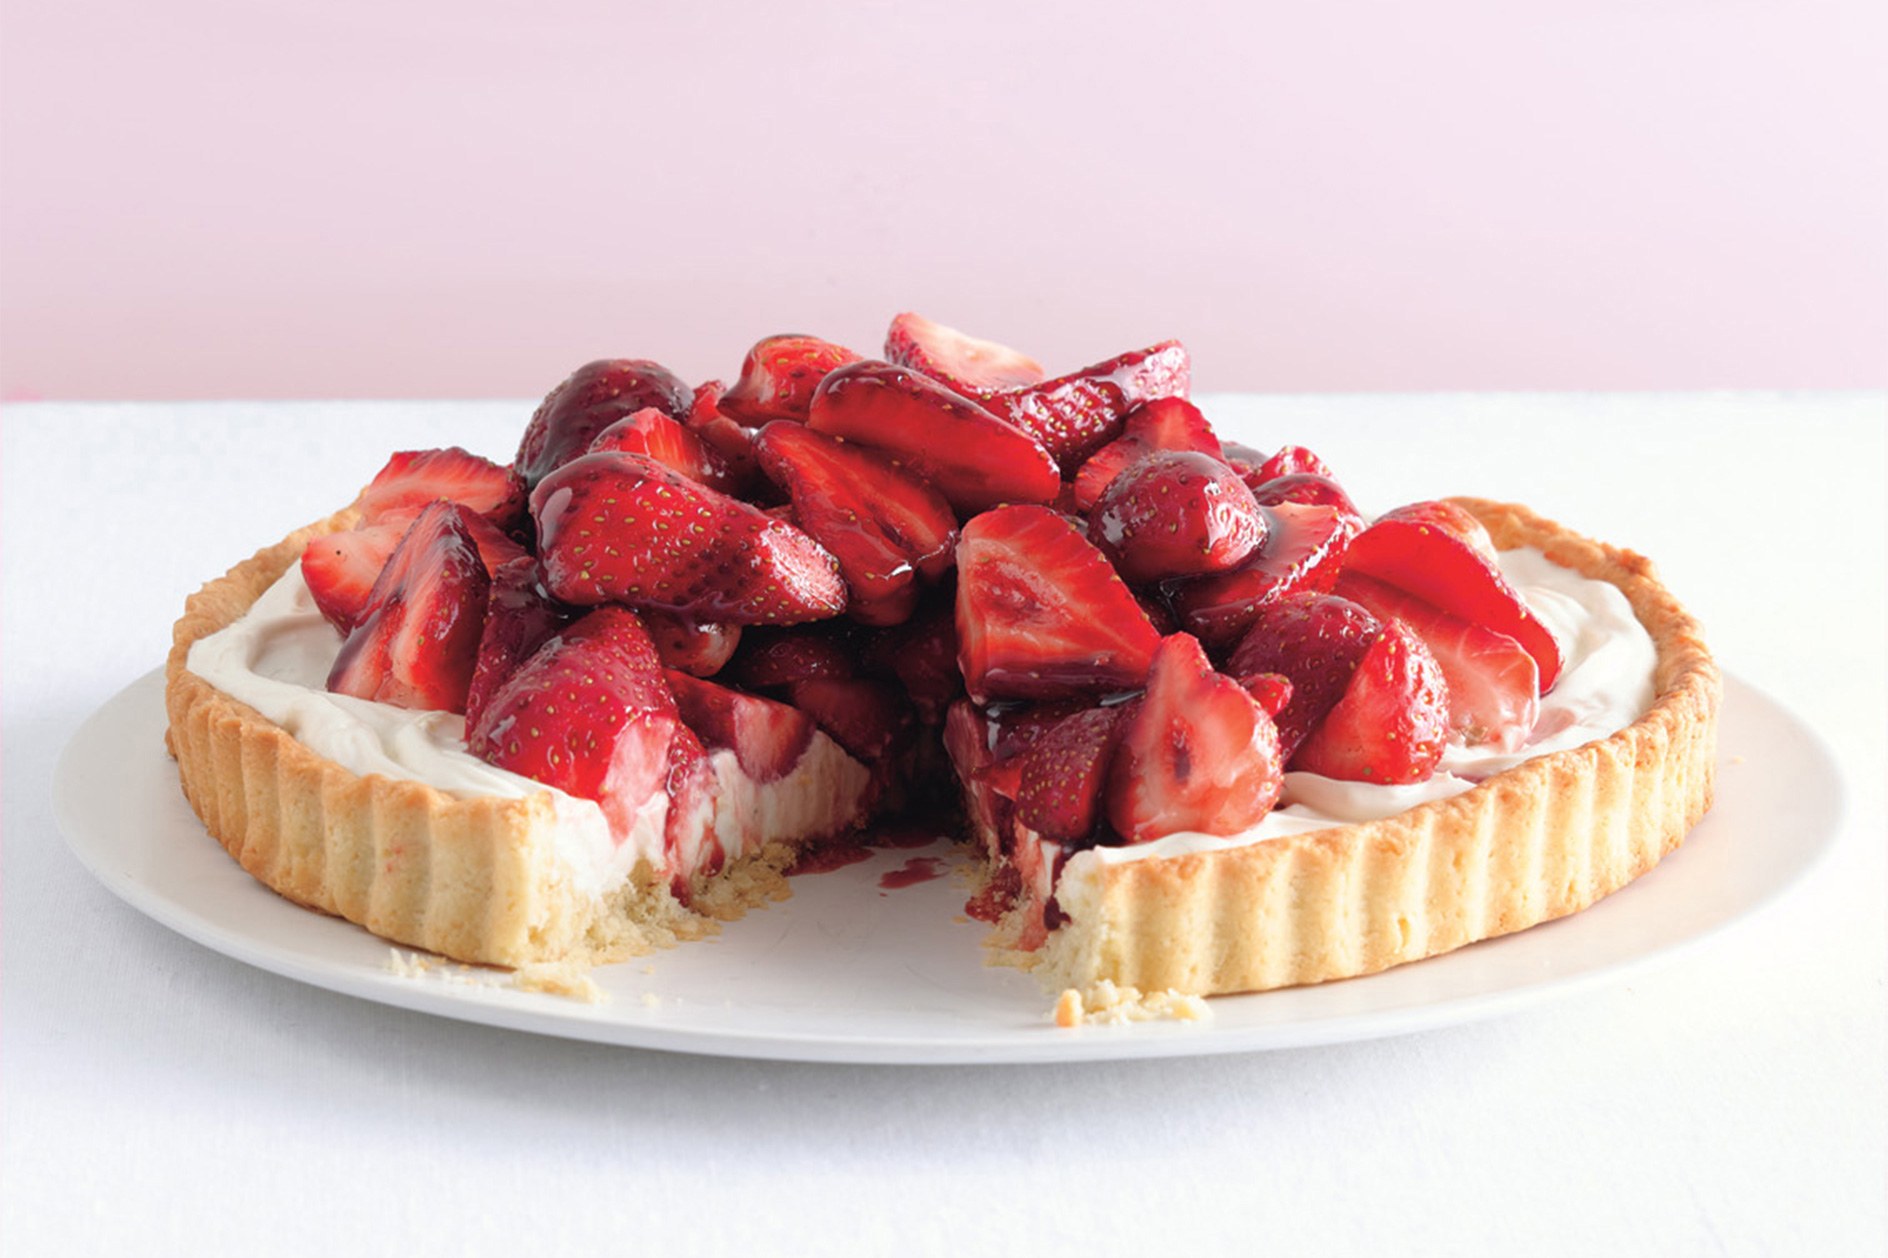 Strawberry Mascarpone Tart With Port Glaze recipe | Epicurious.com